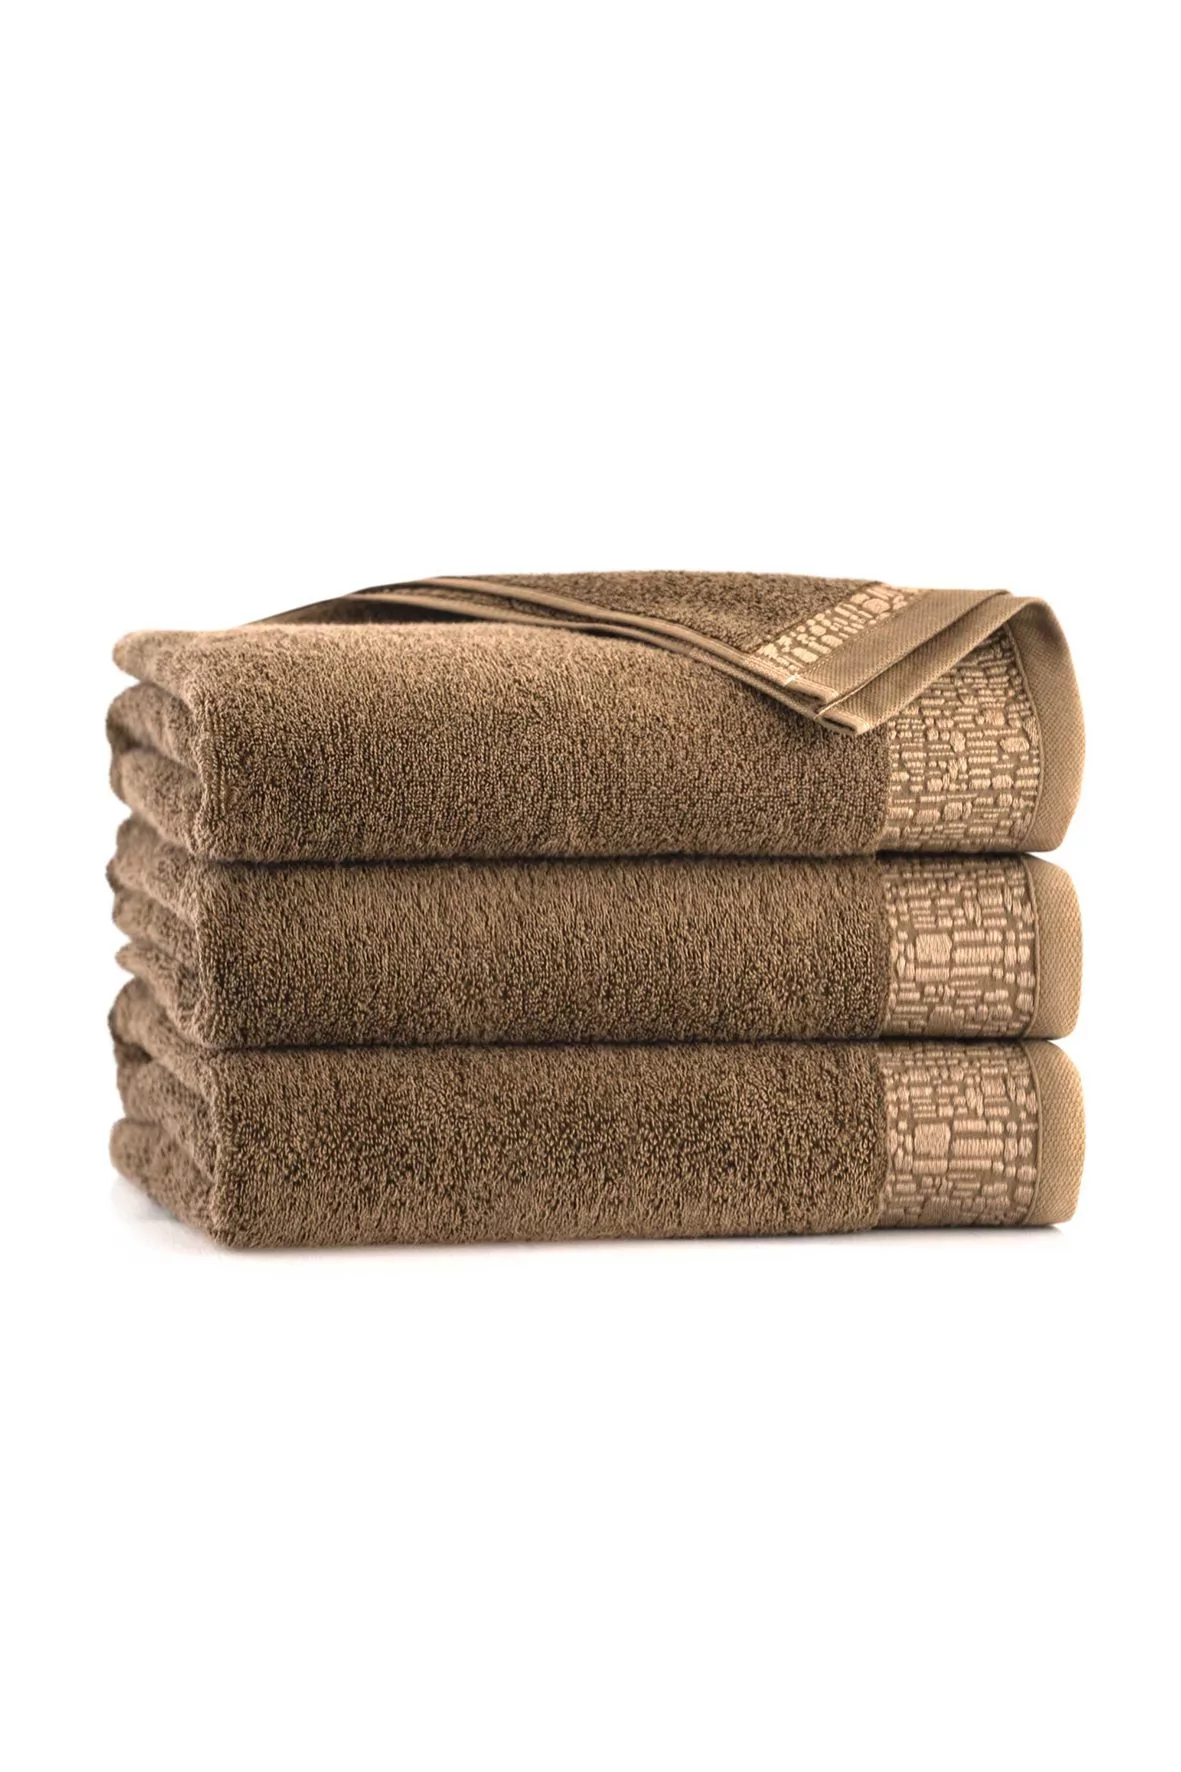 Ręcznik Elena z bawełny egipskiej brązowy 50x90cm